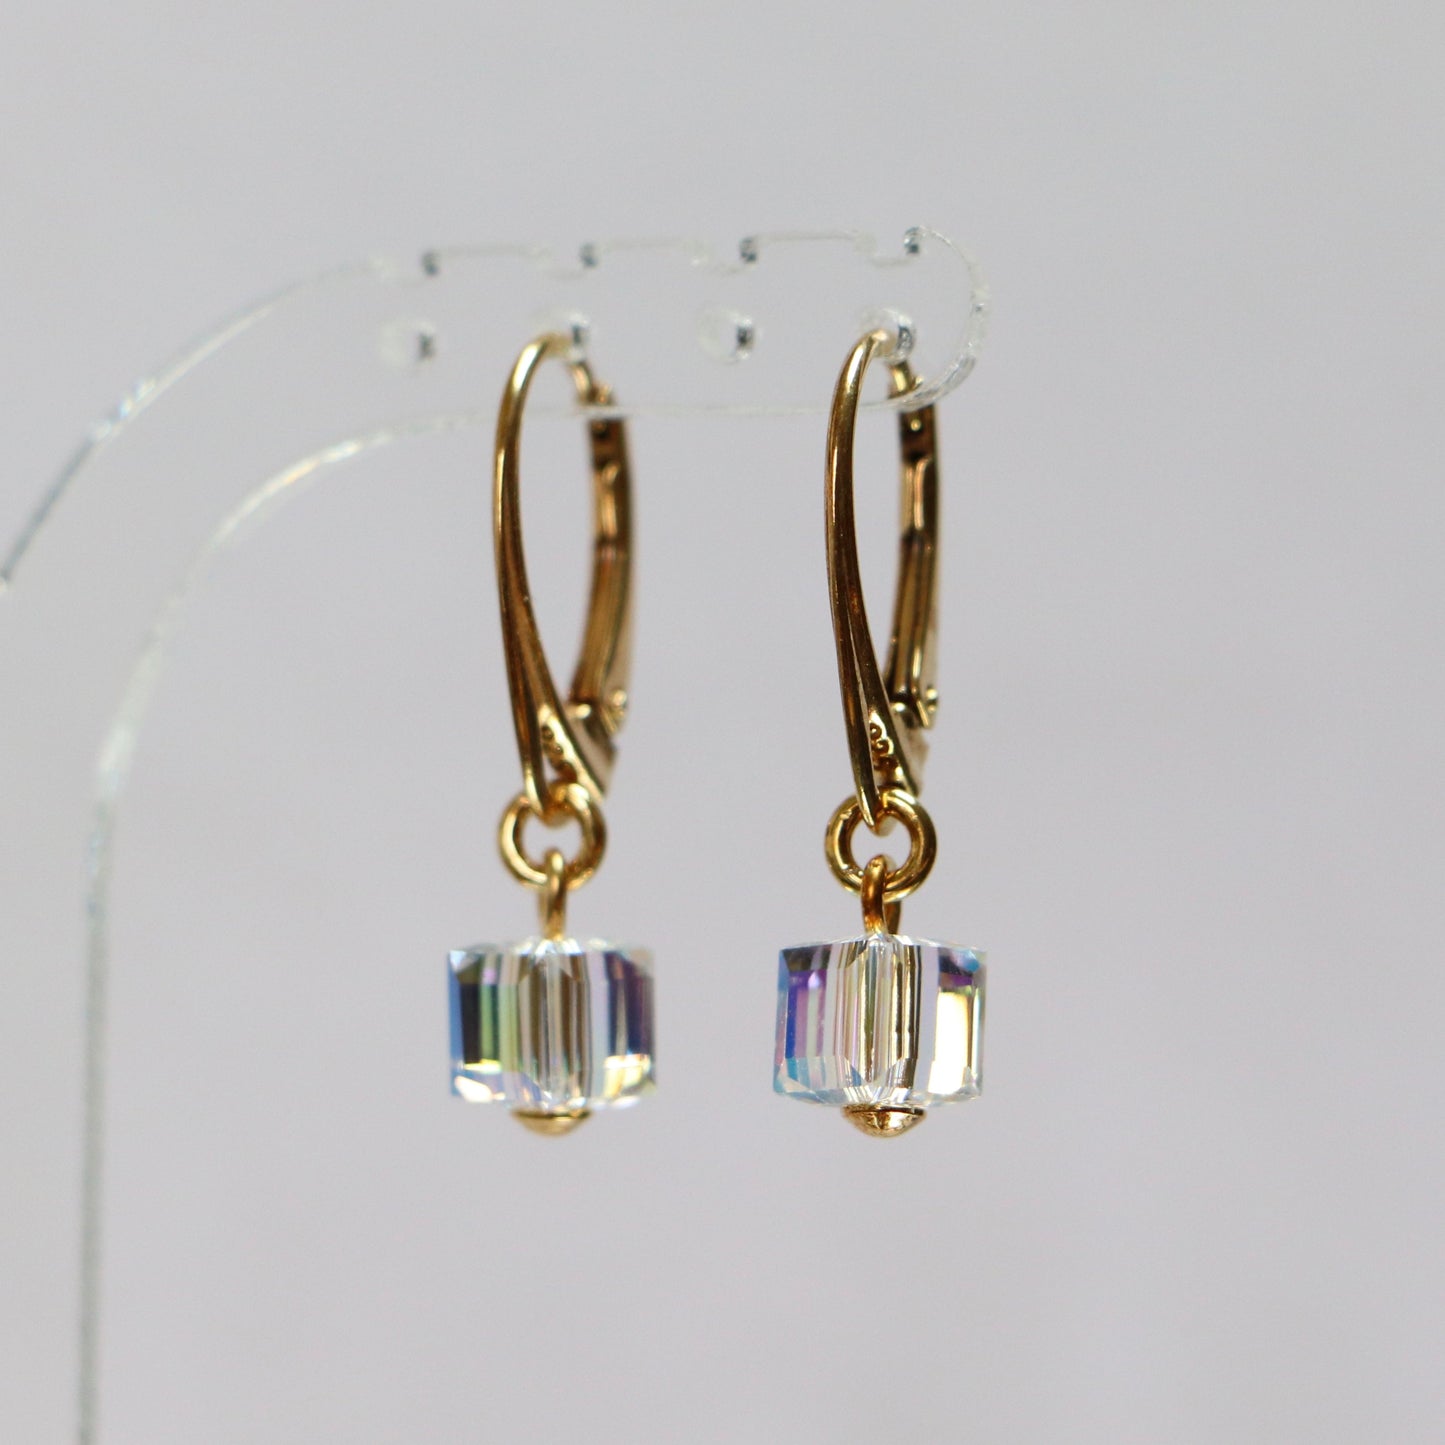 Boucles d'oreilles avec cristaux Swarovski, cristal AB, argent doré, CARRE